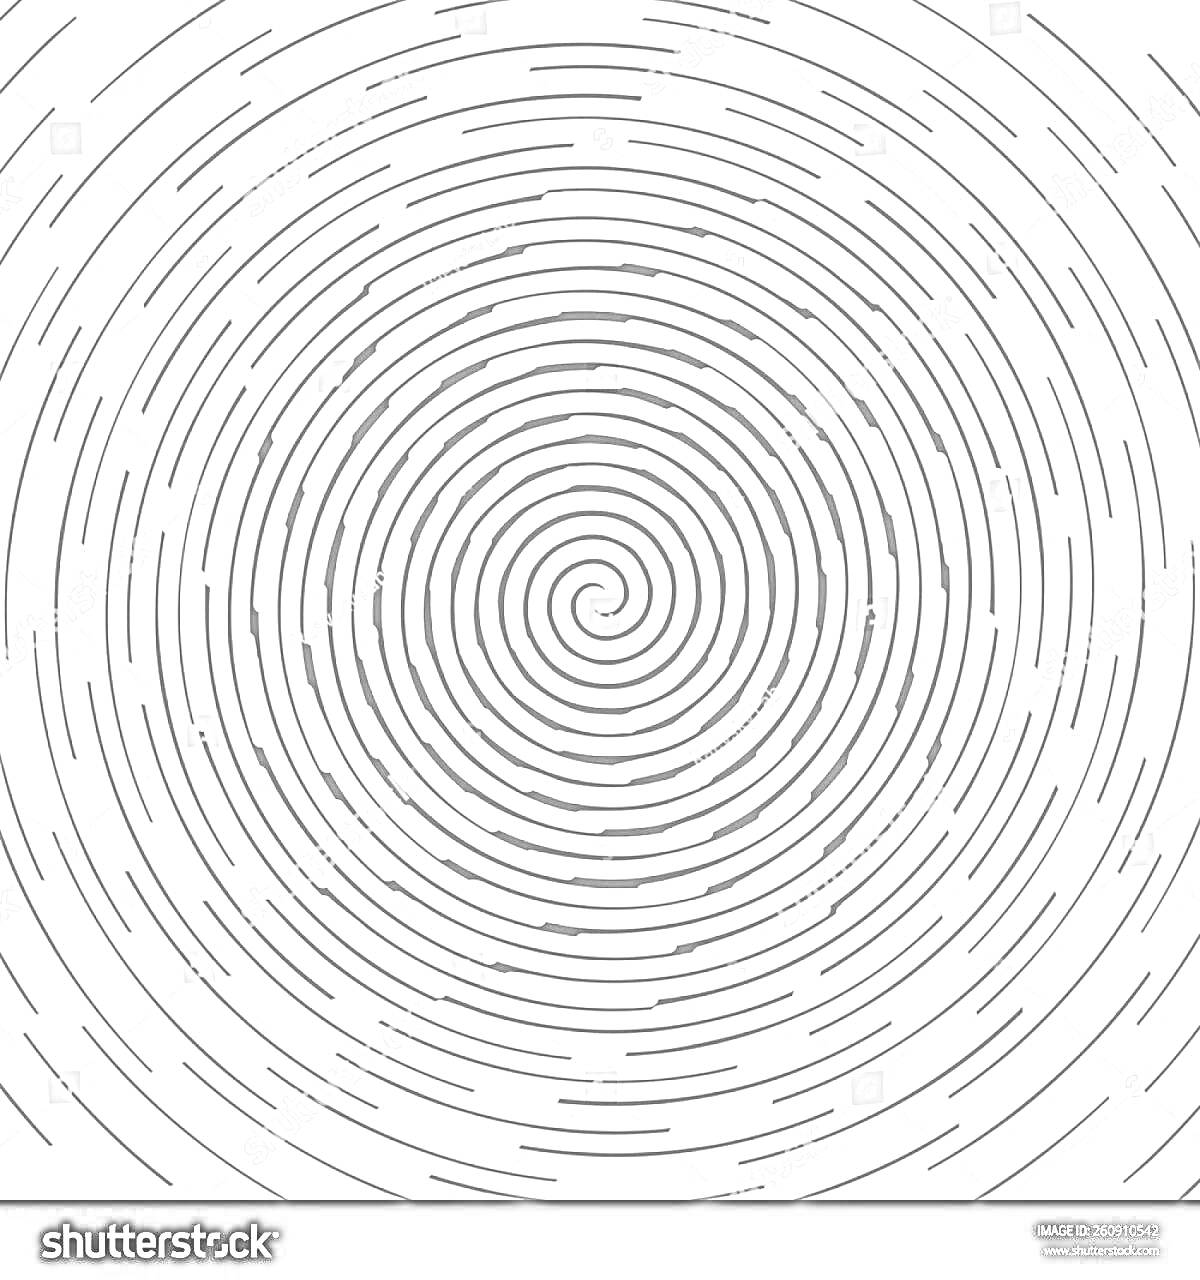 Раскраска закрученные линии, узор в виде спирали, круговой дизайн